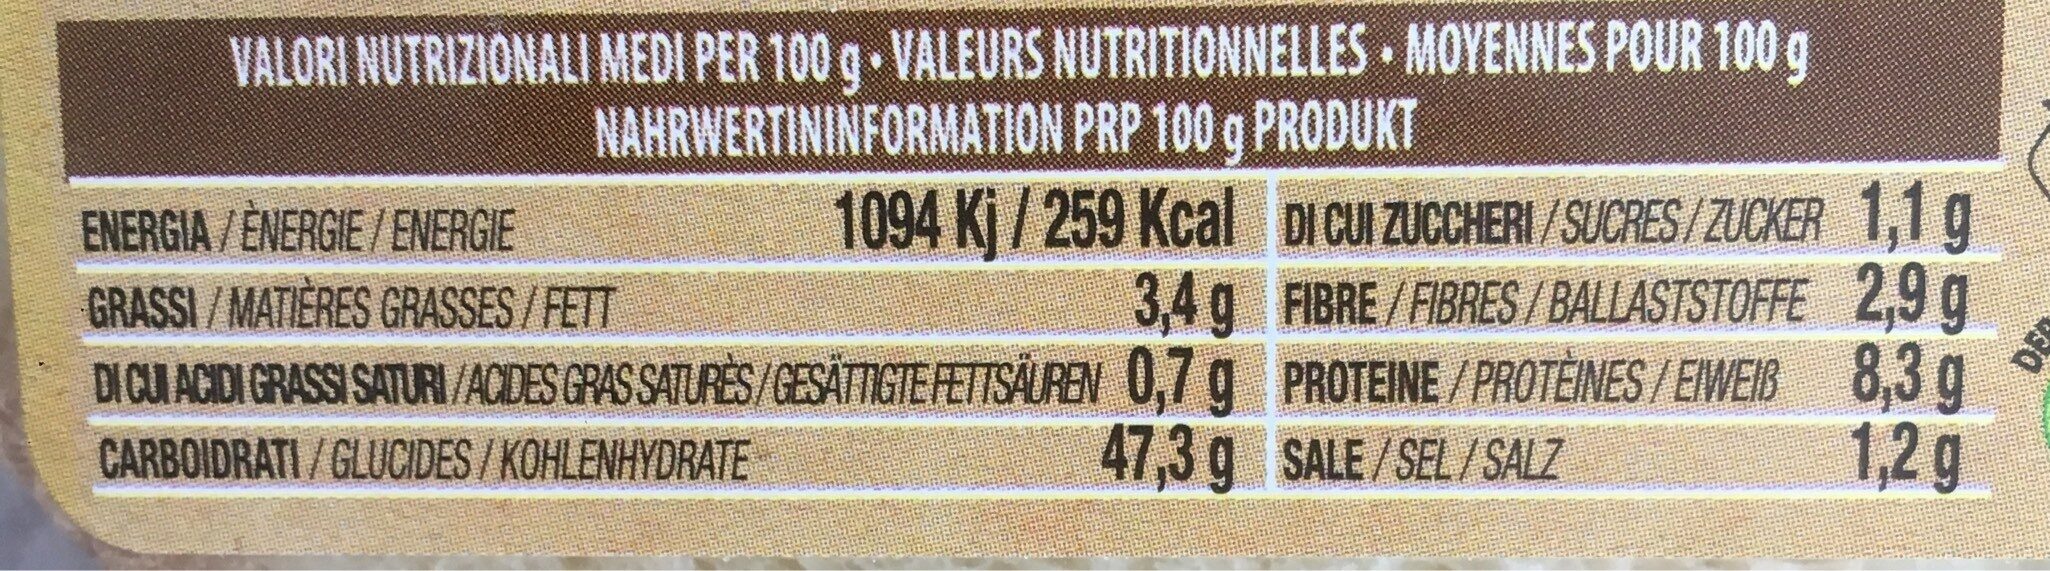 Brushetta - Nutrition facts - fr